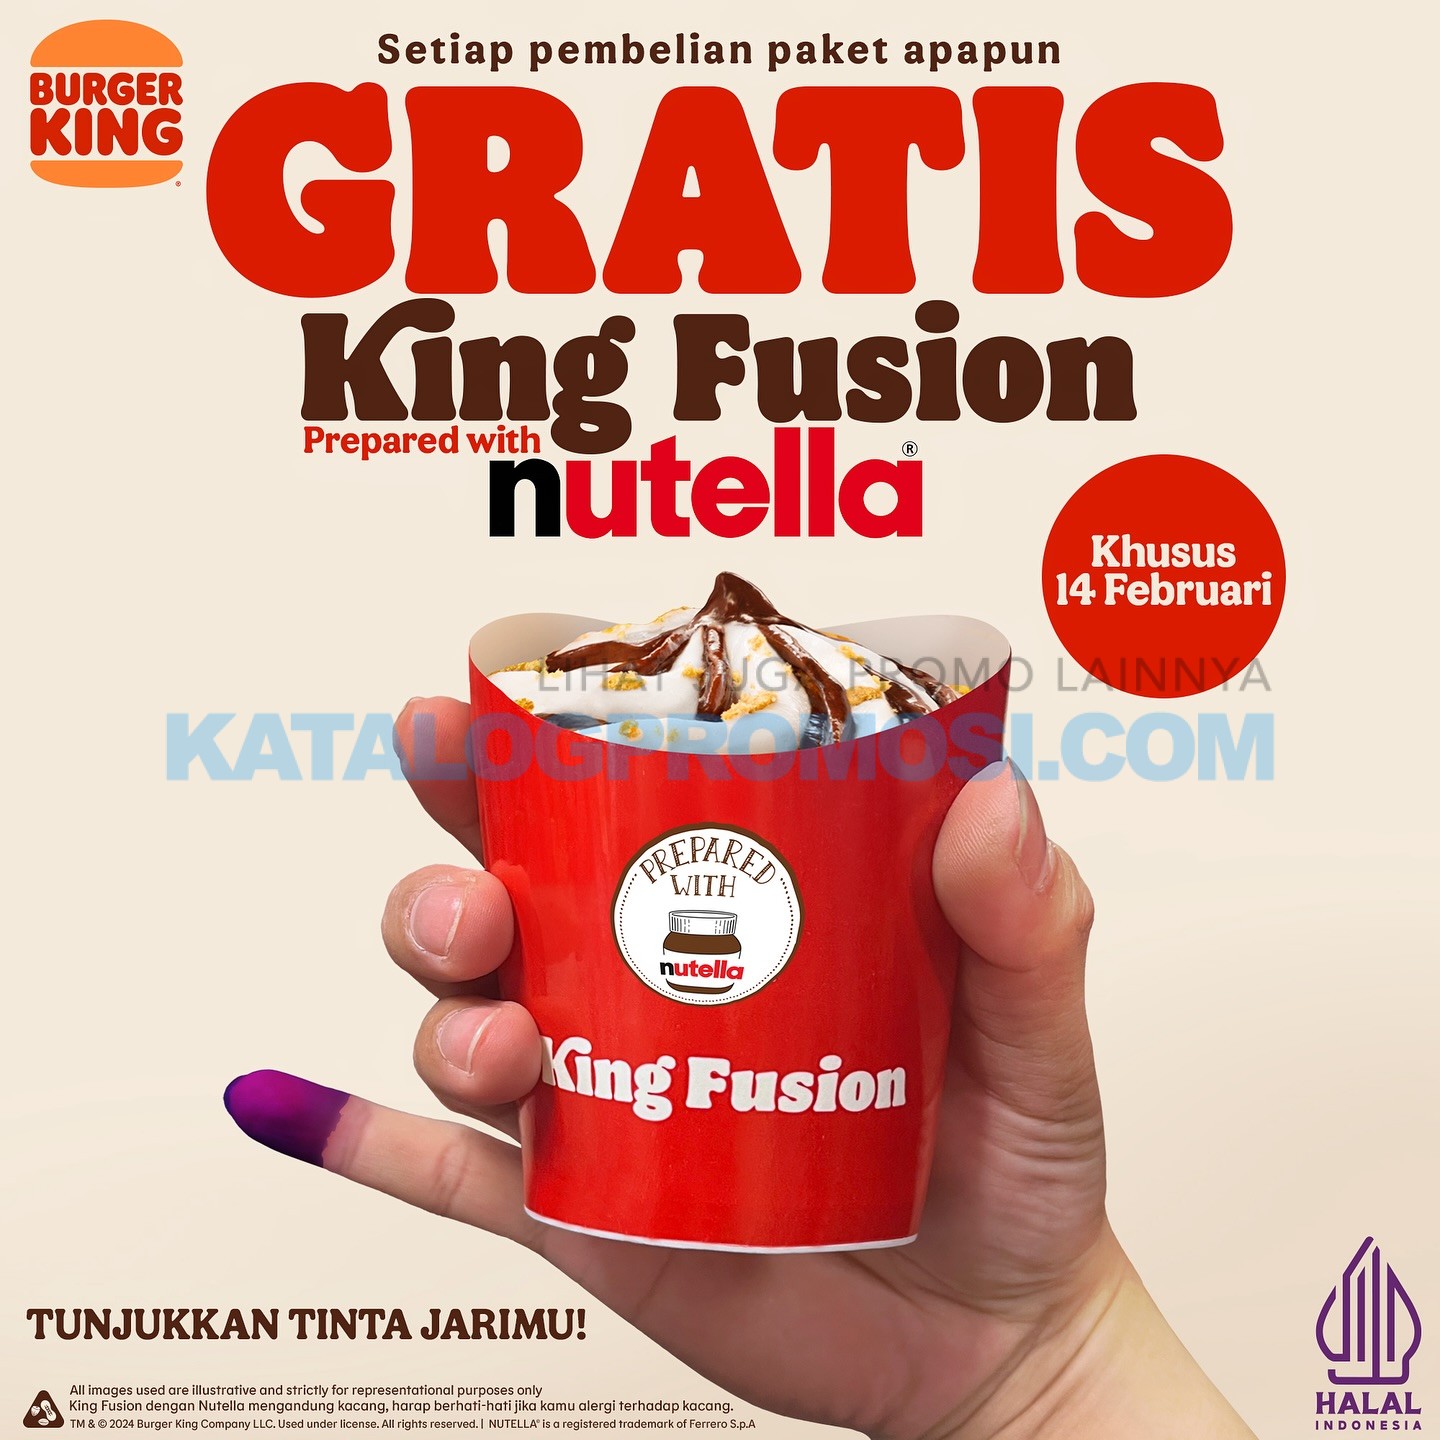 Promo PEMILU BURGER KING GRATIS KING FUSION prepared with NUTELLA